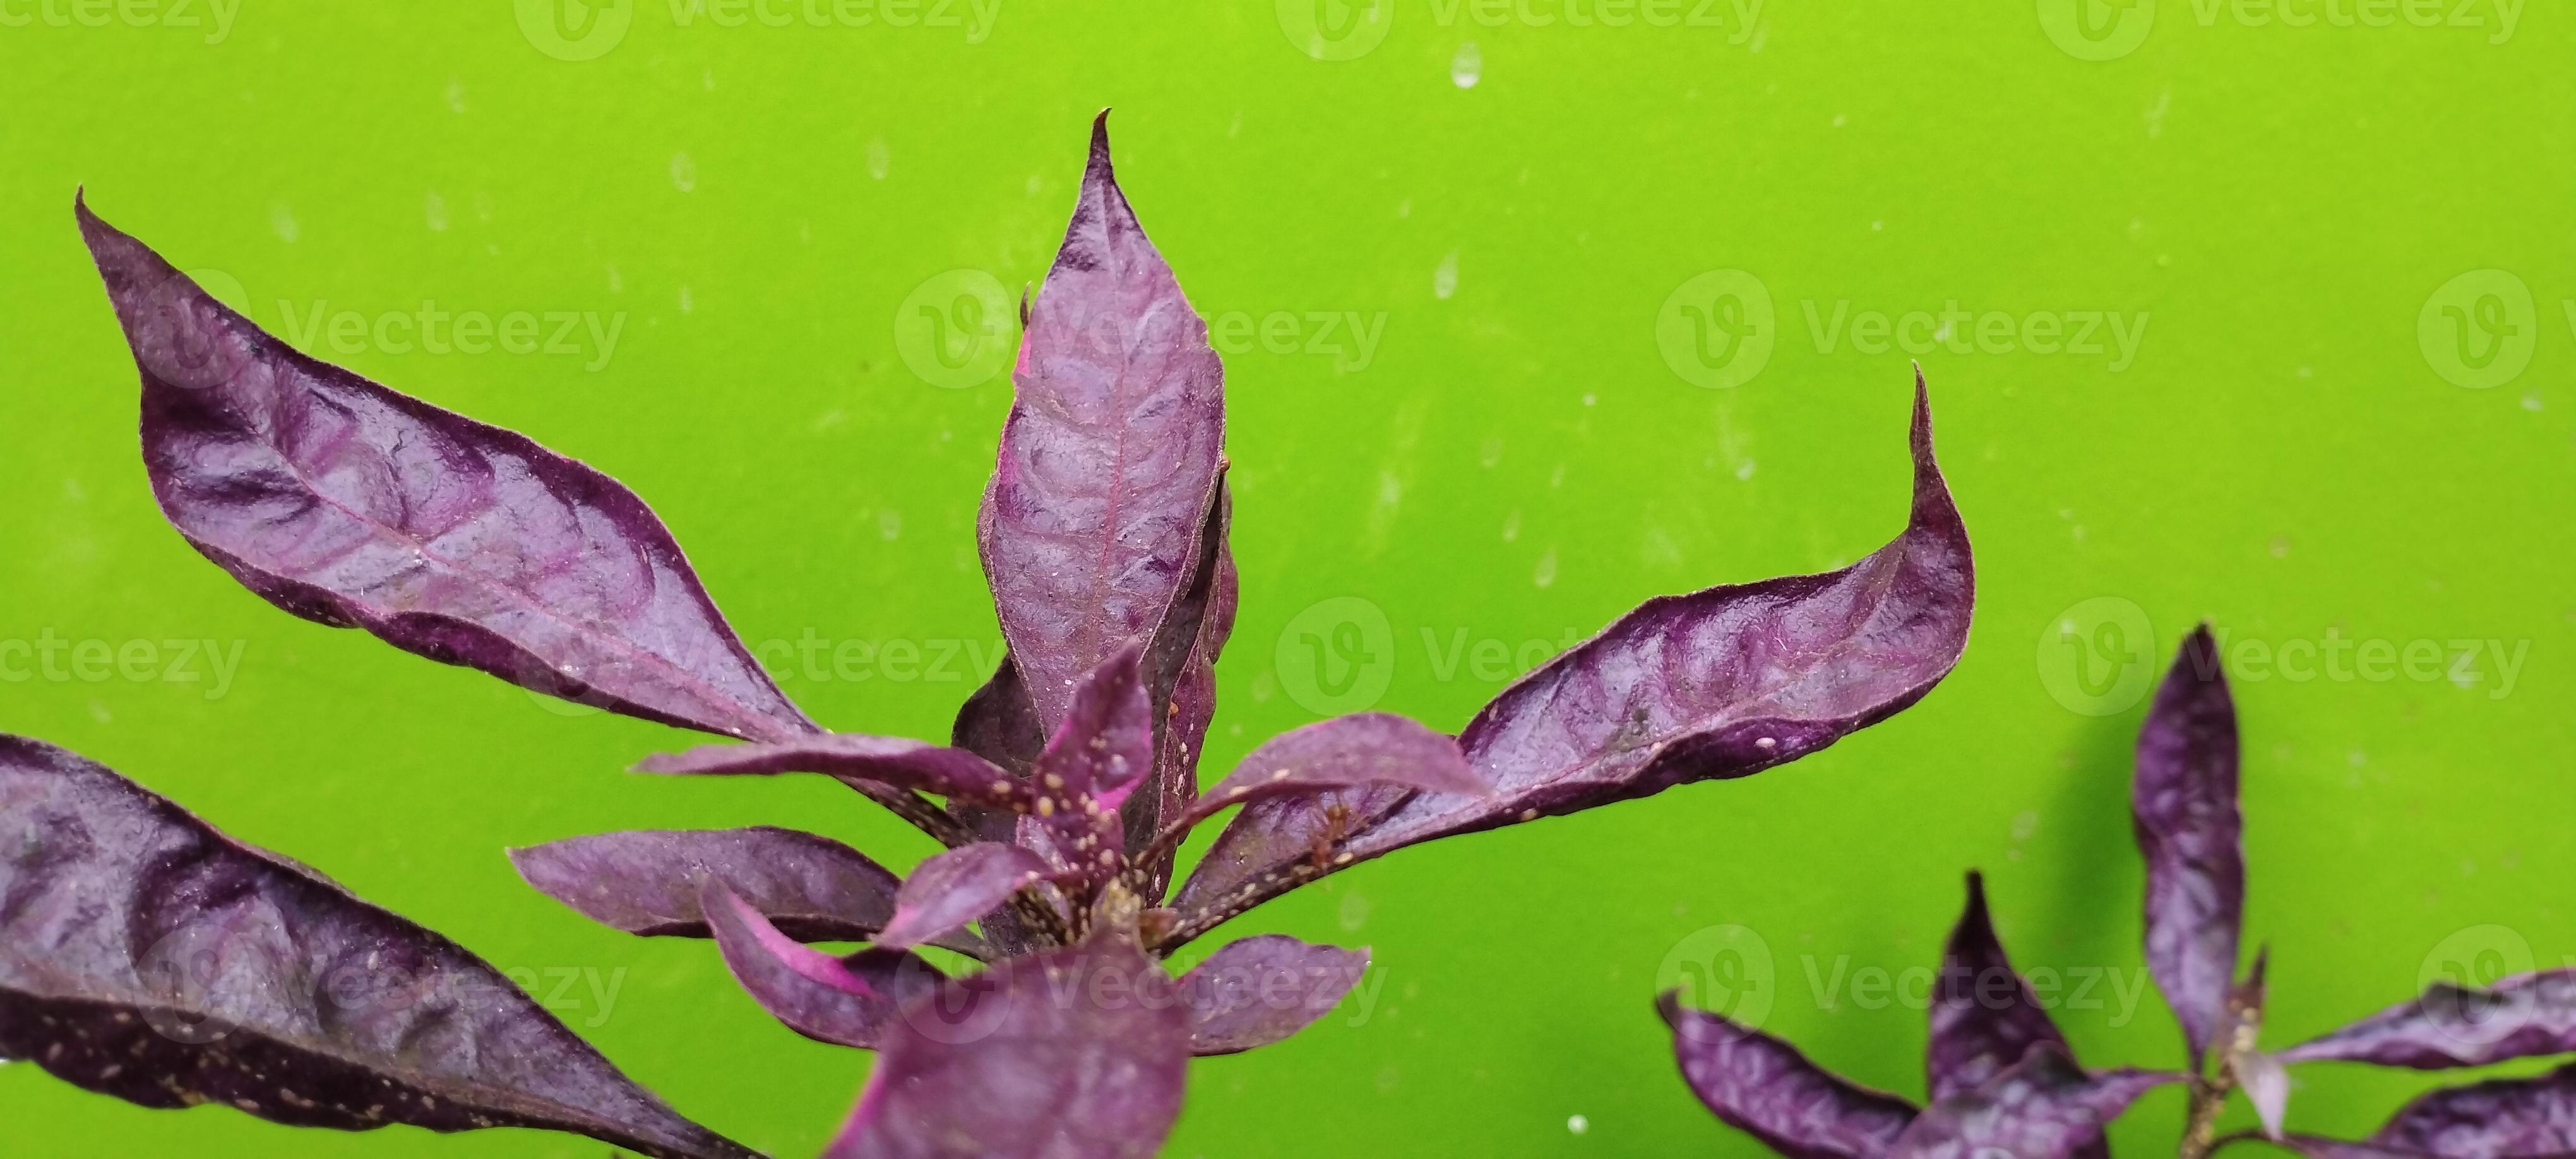 folhas roxas ou também conhecidas como folhas wungu são plantas medicinais  de papua nova guiné e polinésia 12564270 Foto de stock no Vecteezy